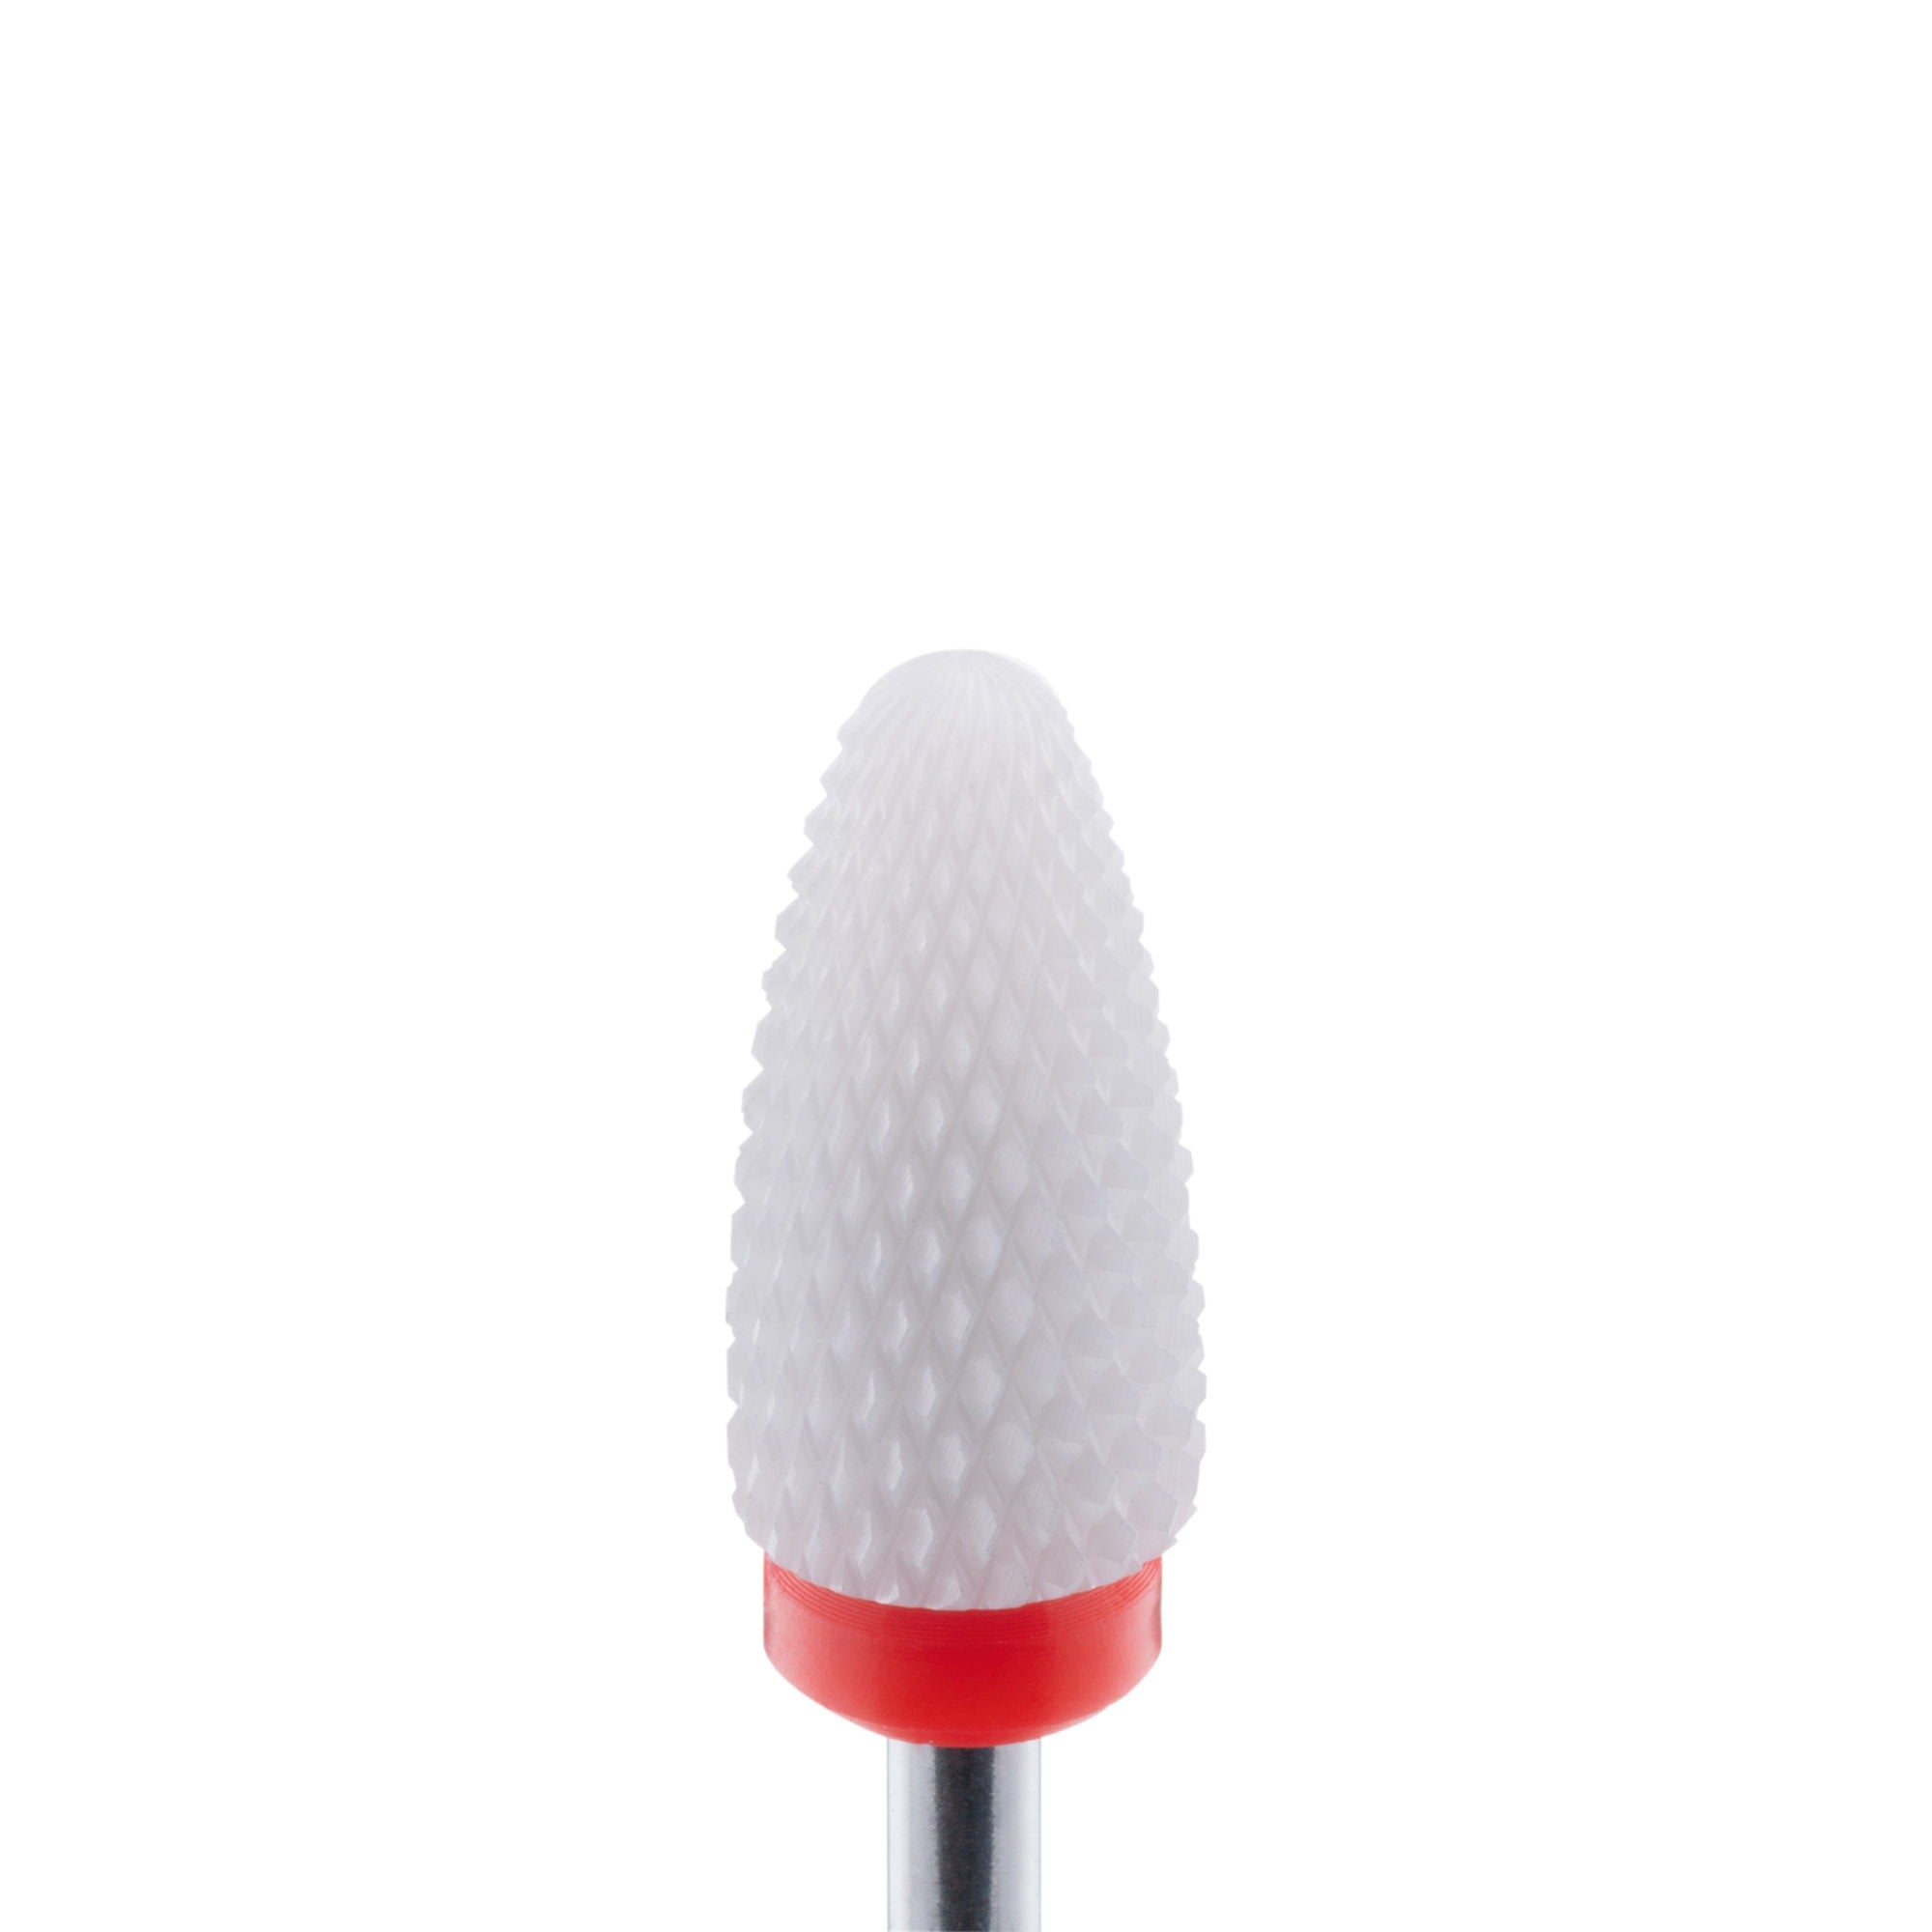 Drill Bit Ceramic CB013 - Kegle, F-Bit-ABA-NR Kosmetik